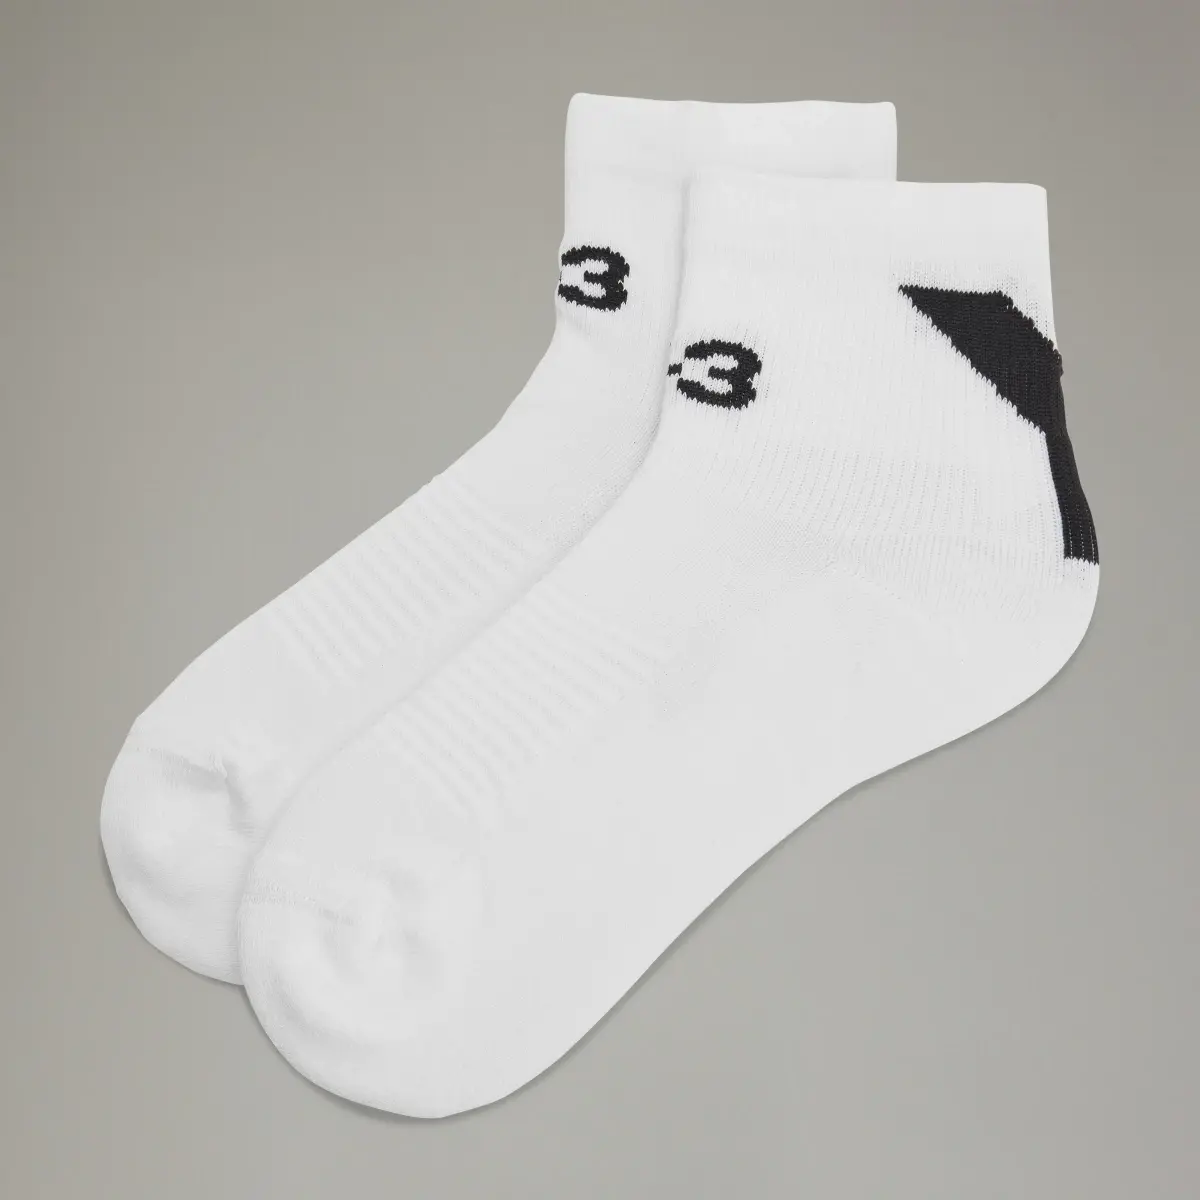 Adidas Y-3 Lo Socks. 2